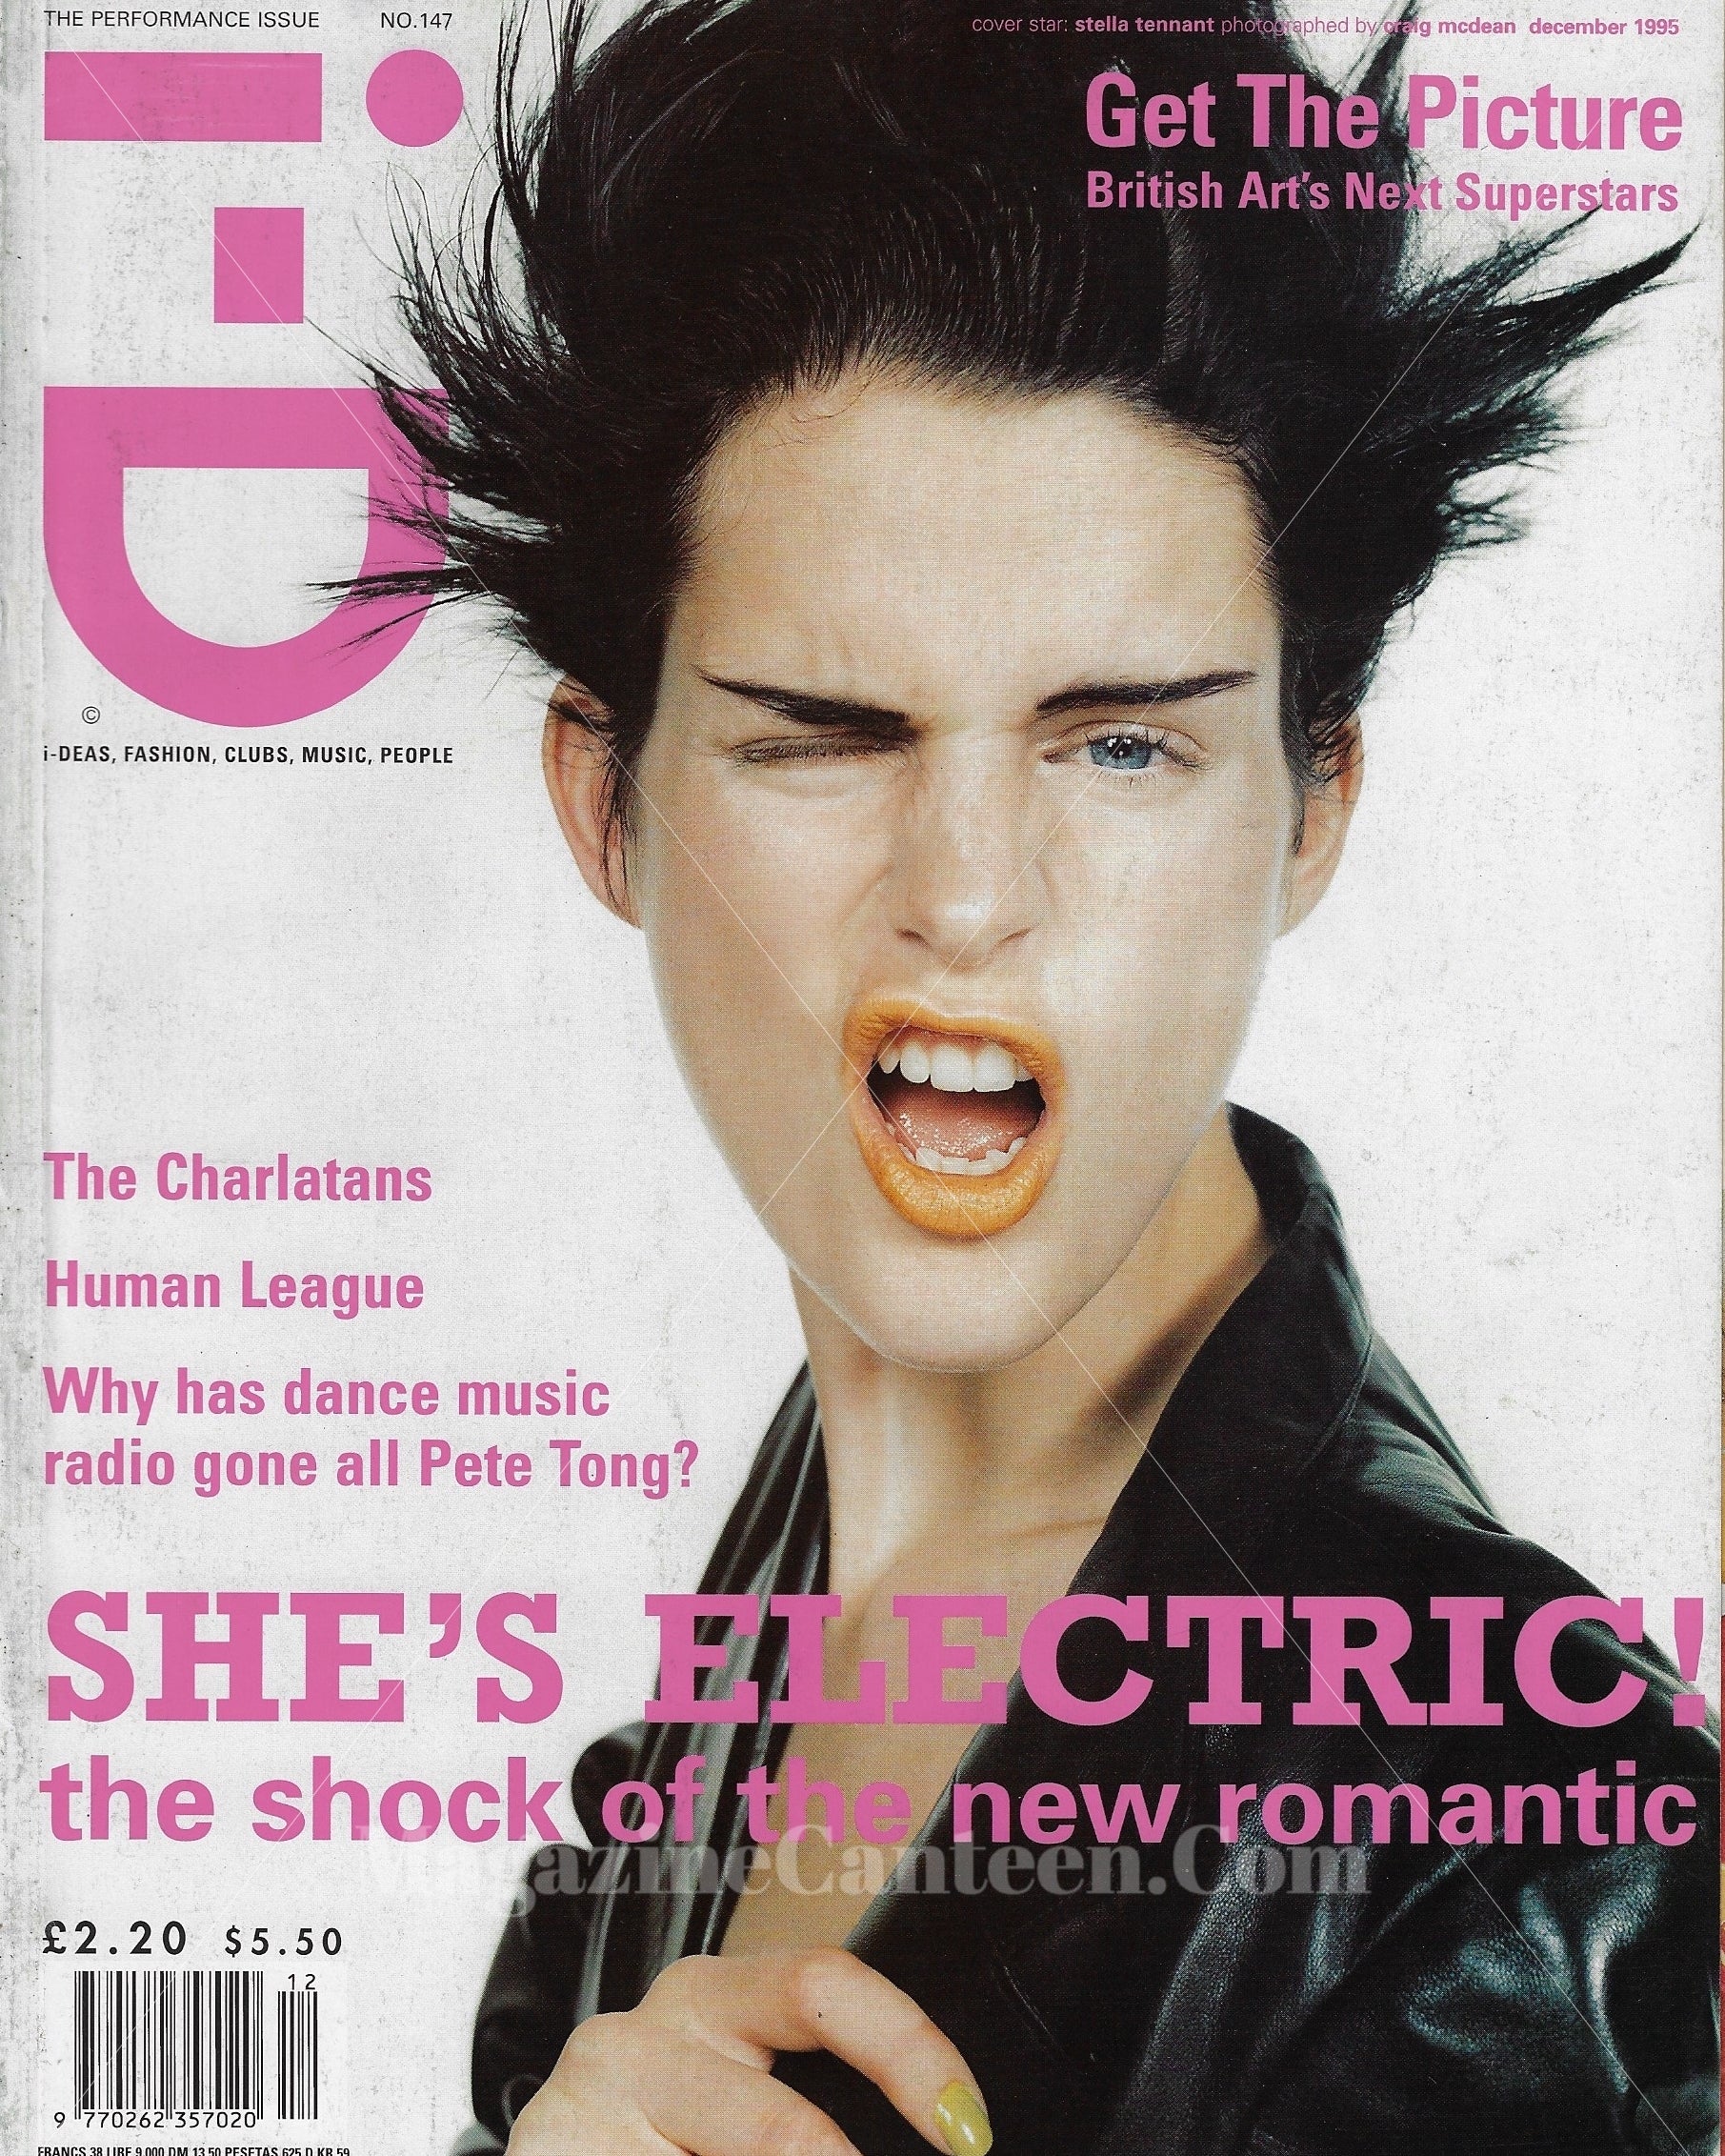 I-D Magazine 147 - Stella Tennant 1995